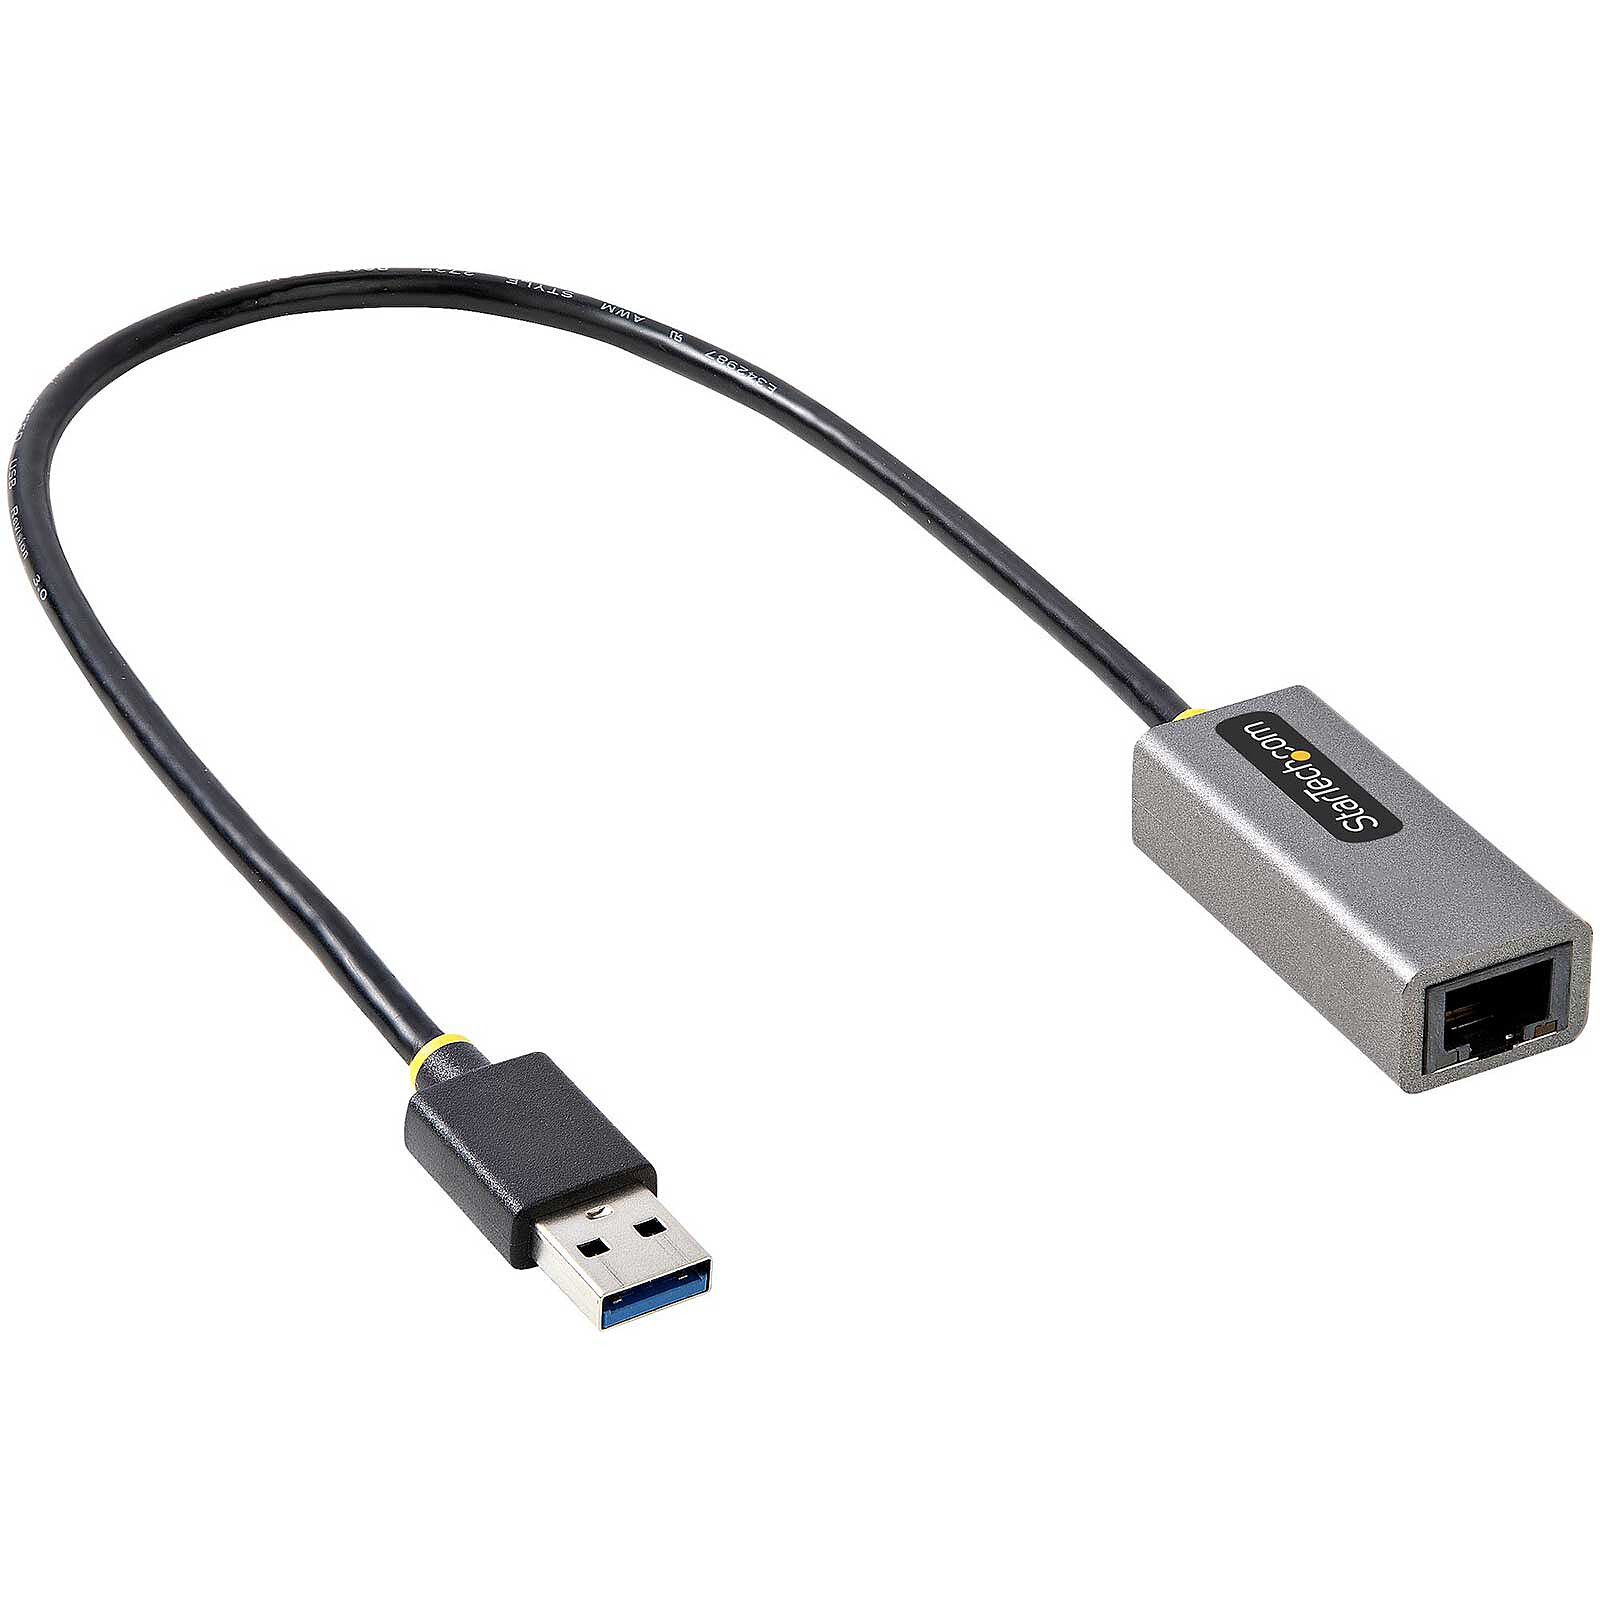 StarTech.com Adaptateur réseau USB 3.0 vers RJ45 Gigabit Ethernet